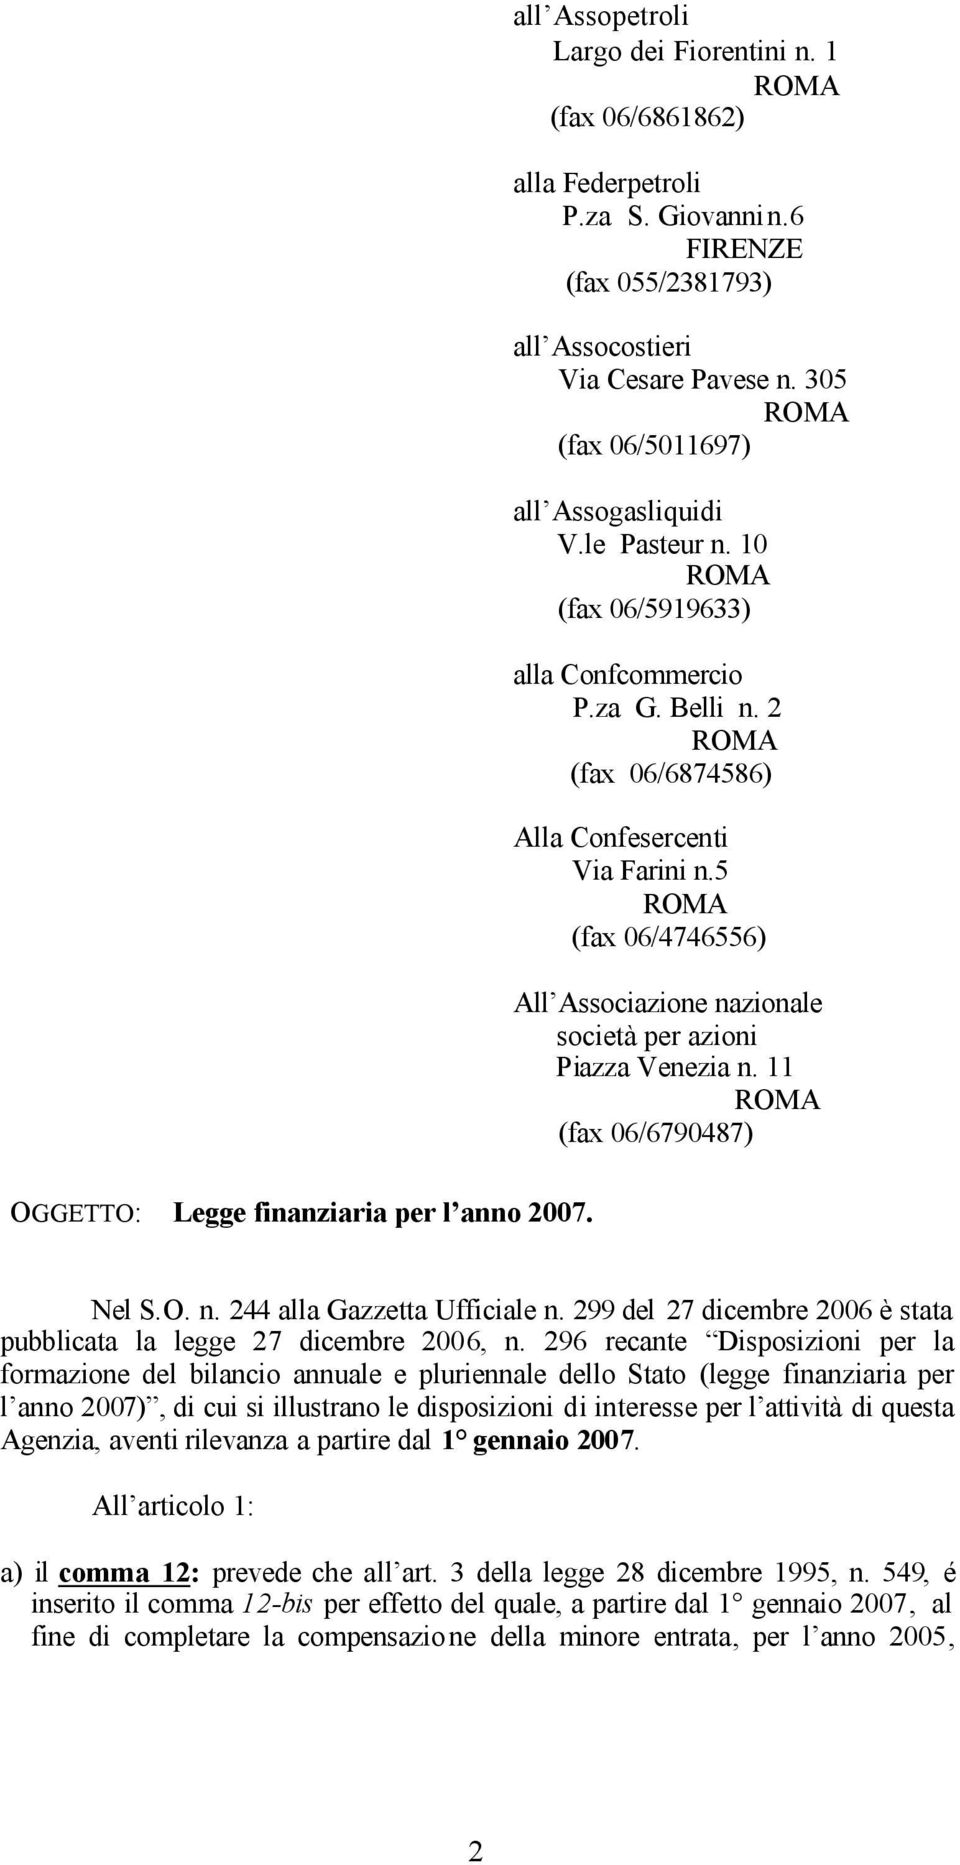 5 (fax 06/4746556) All Associazione nazionale società per azioni Piazza Venezia n. 11 (fax 06/6790487) OGGETTO: Legge finanziaria per l anno 2007. Nel S.O. n. 244 alla Gazzetta Ufficiale n.